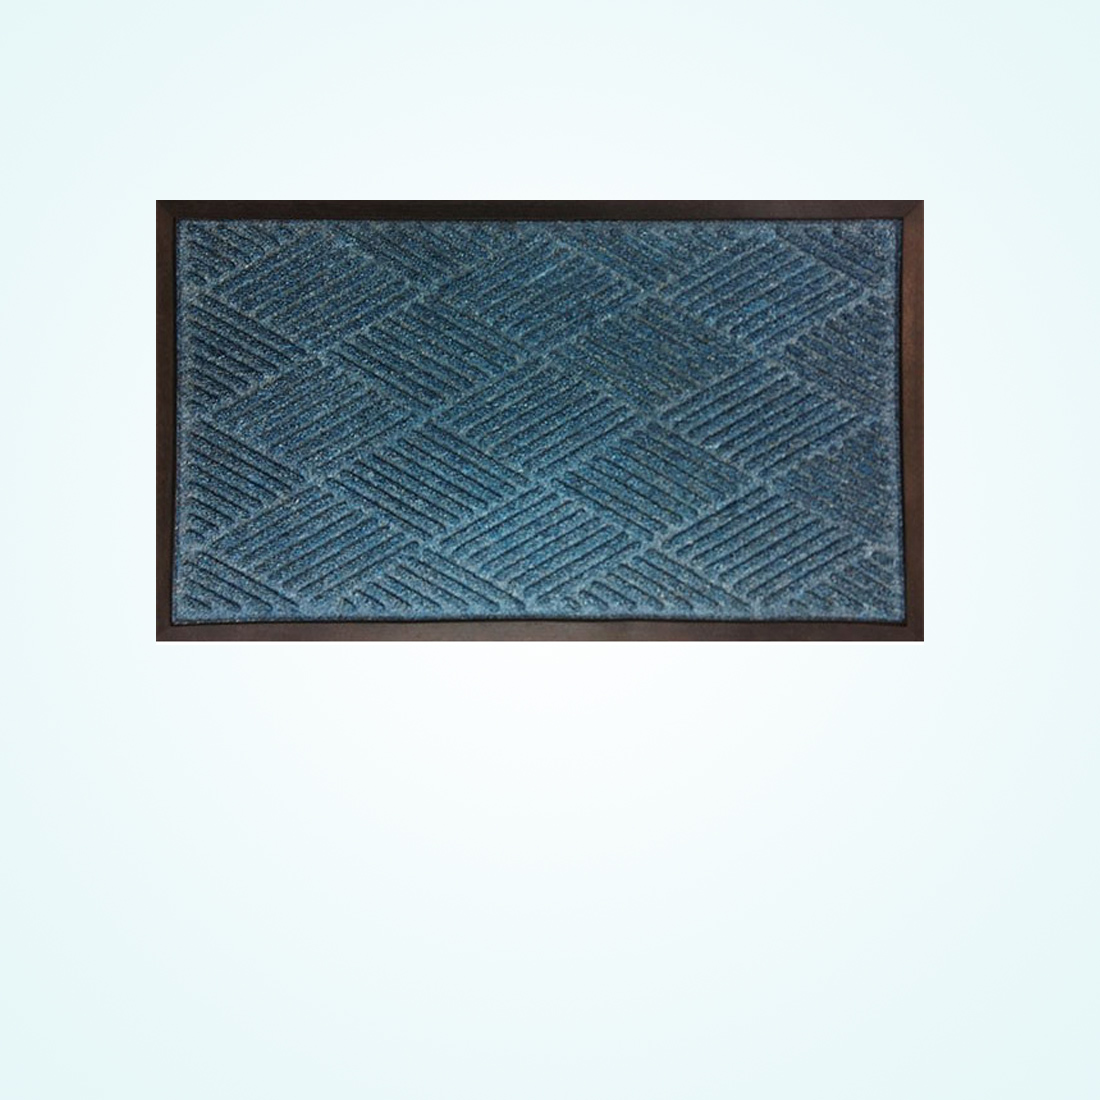 rubber flooring mats